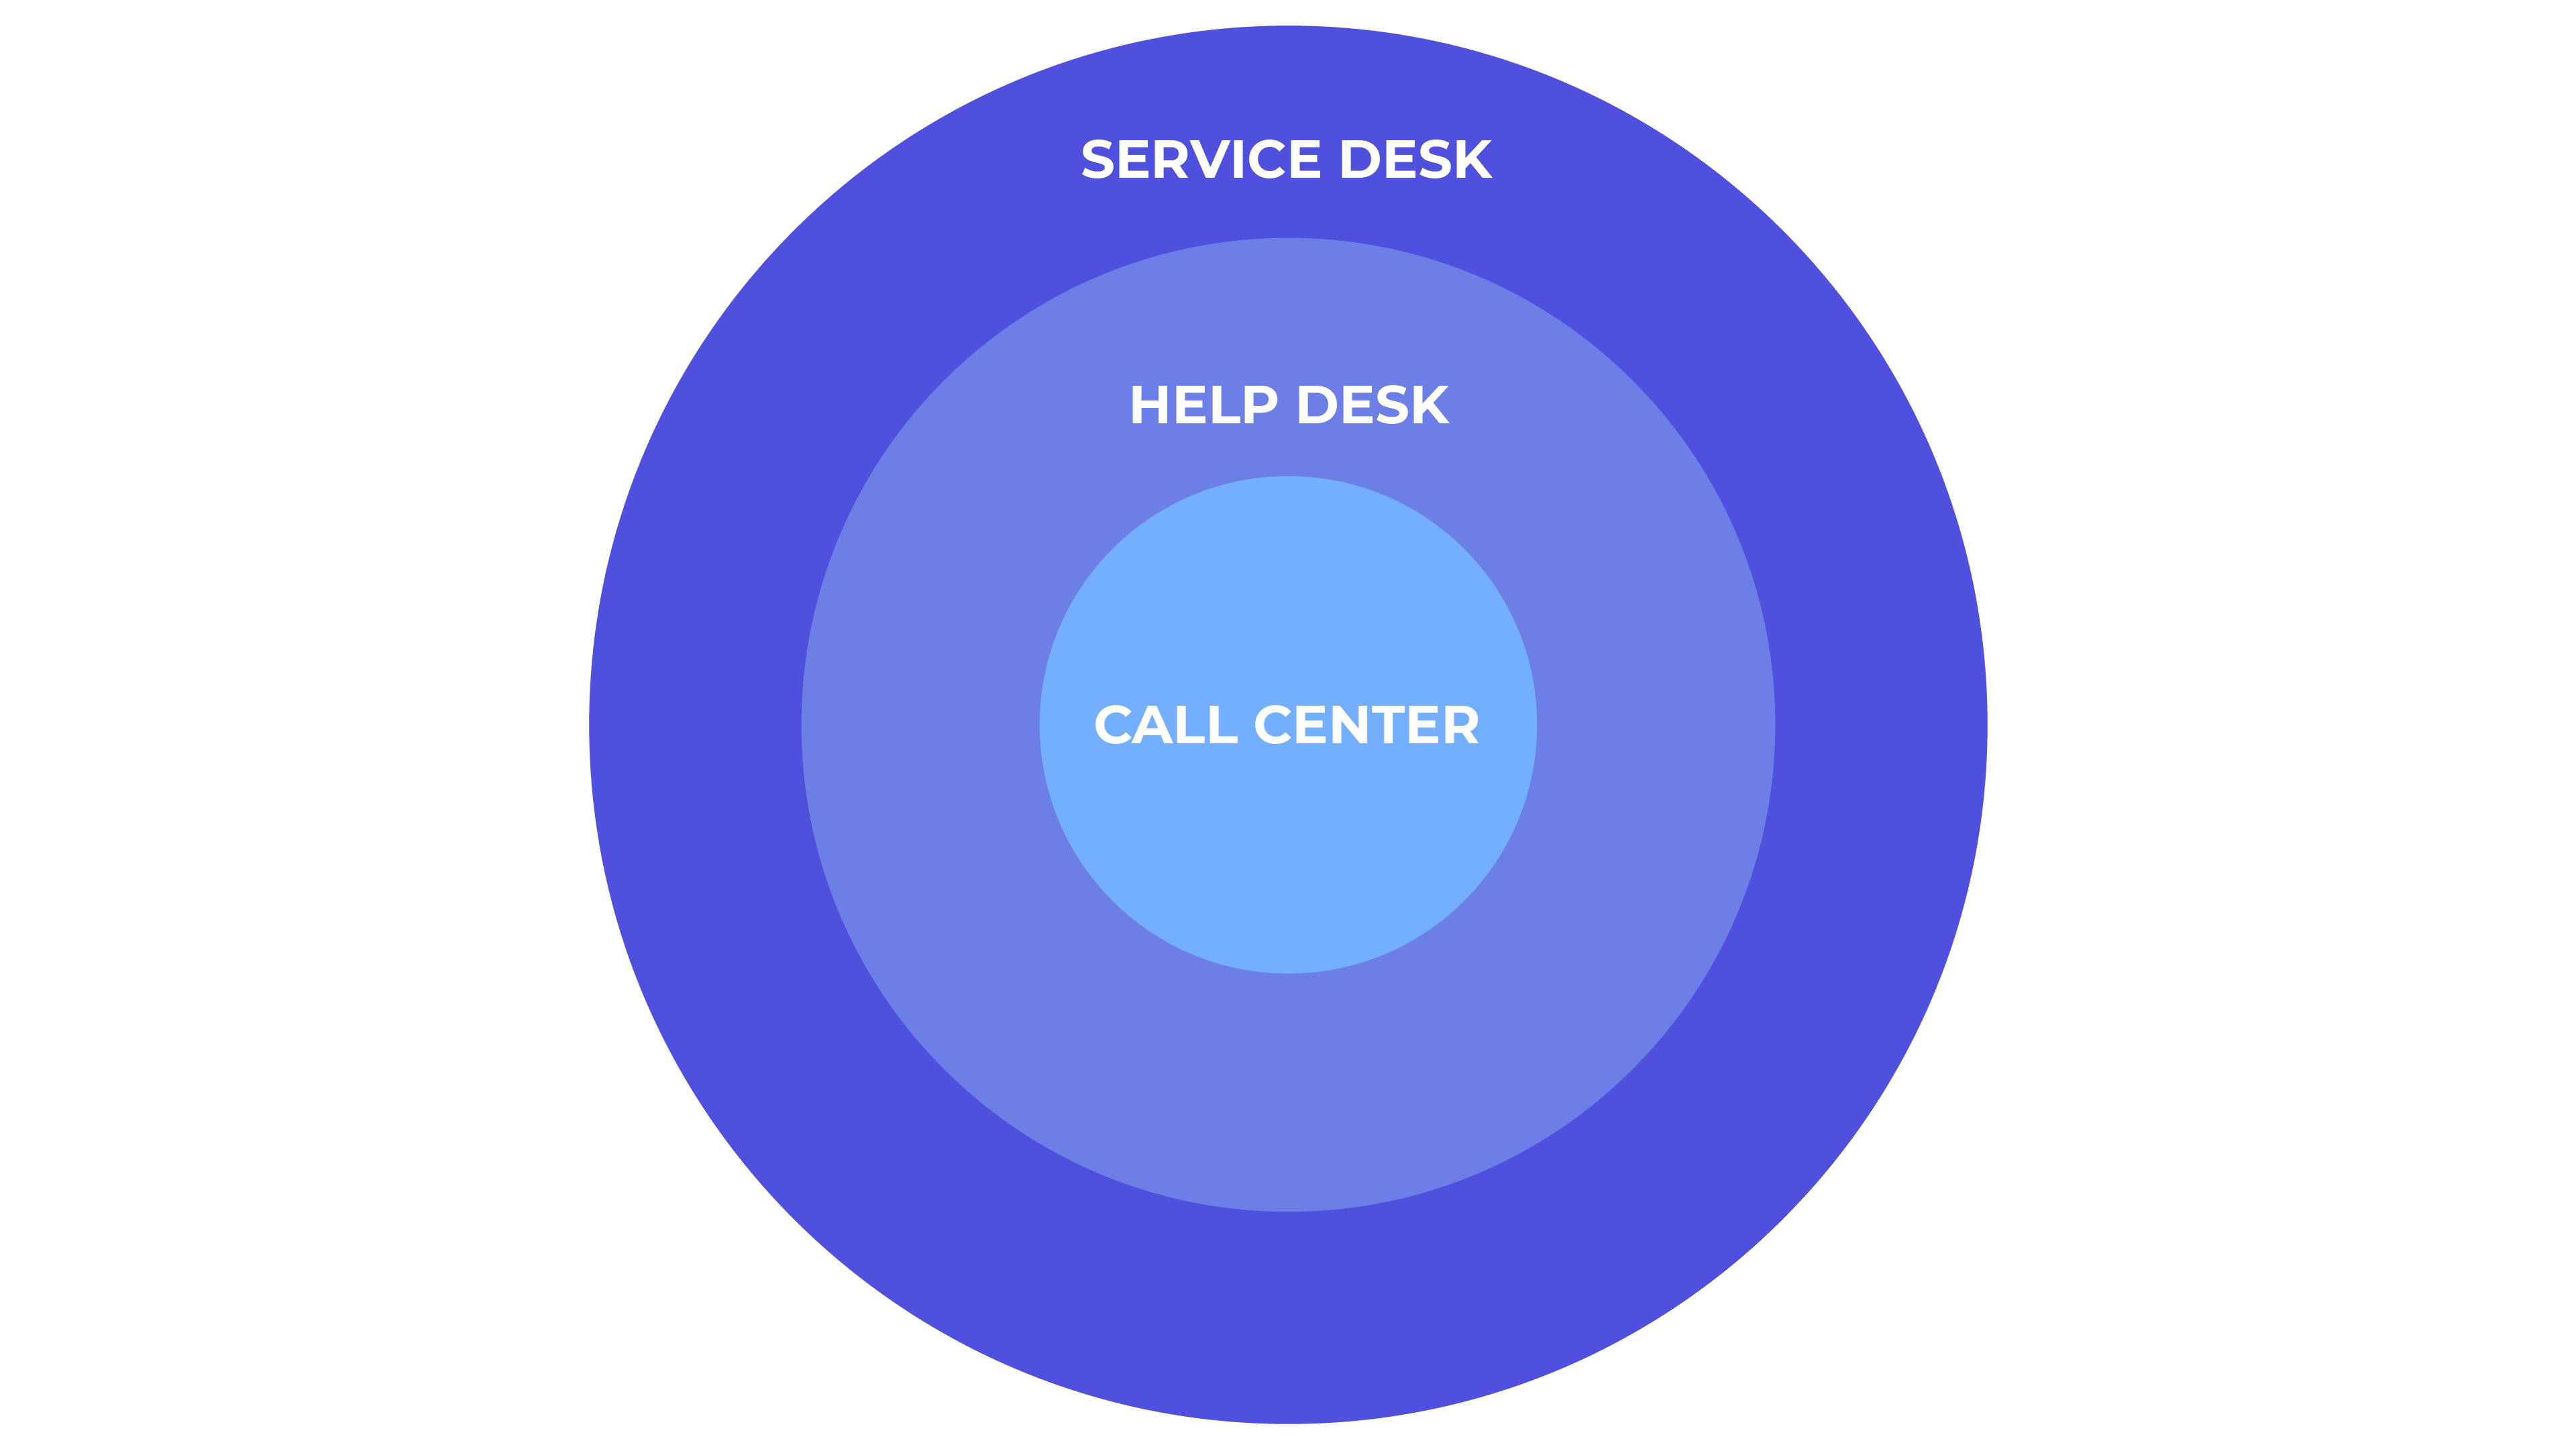 Le centre de service englobe plus de missions que le help desk ou le call center